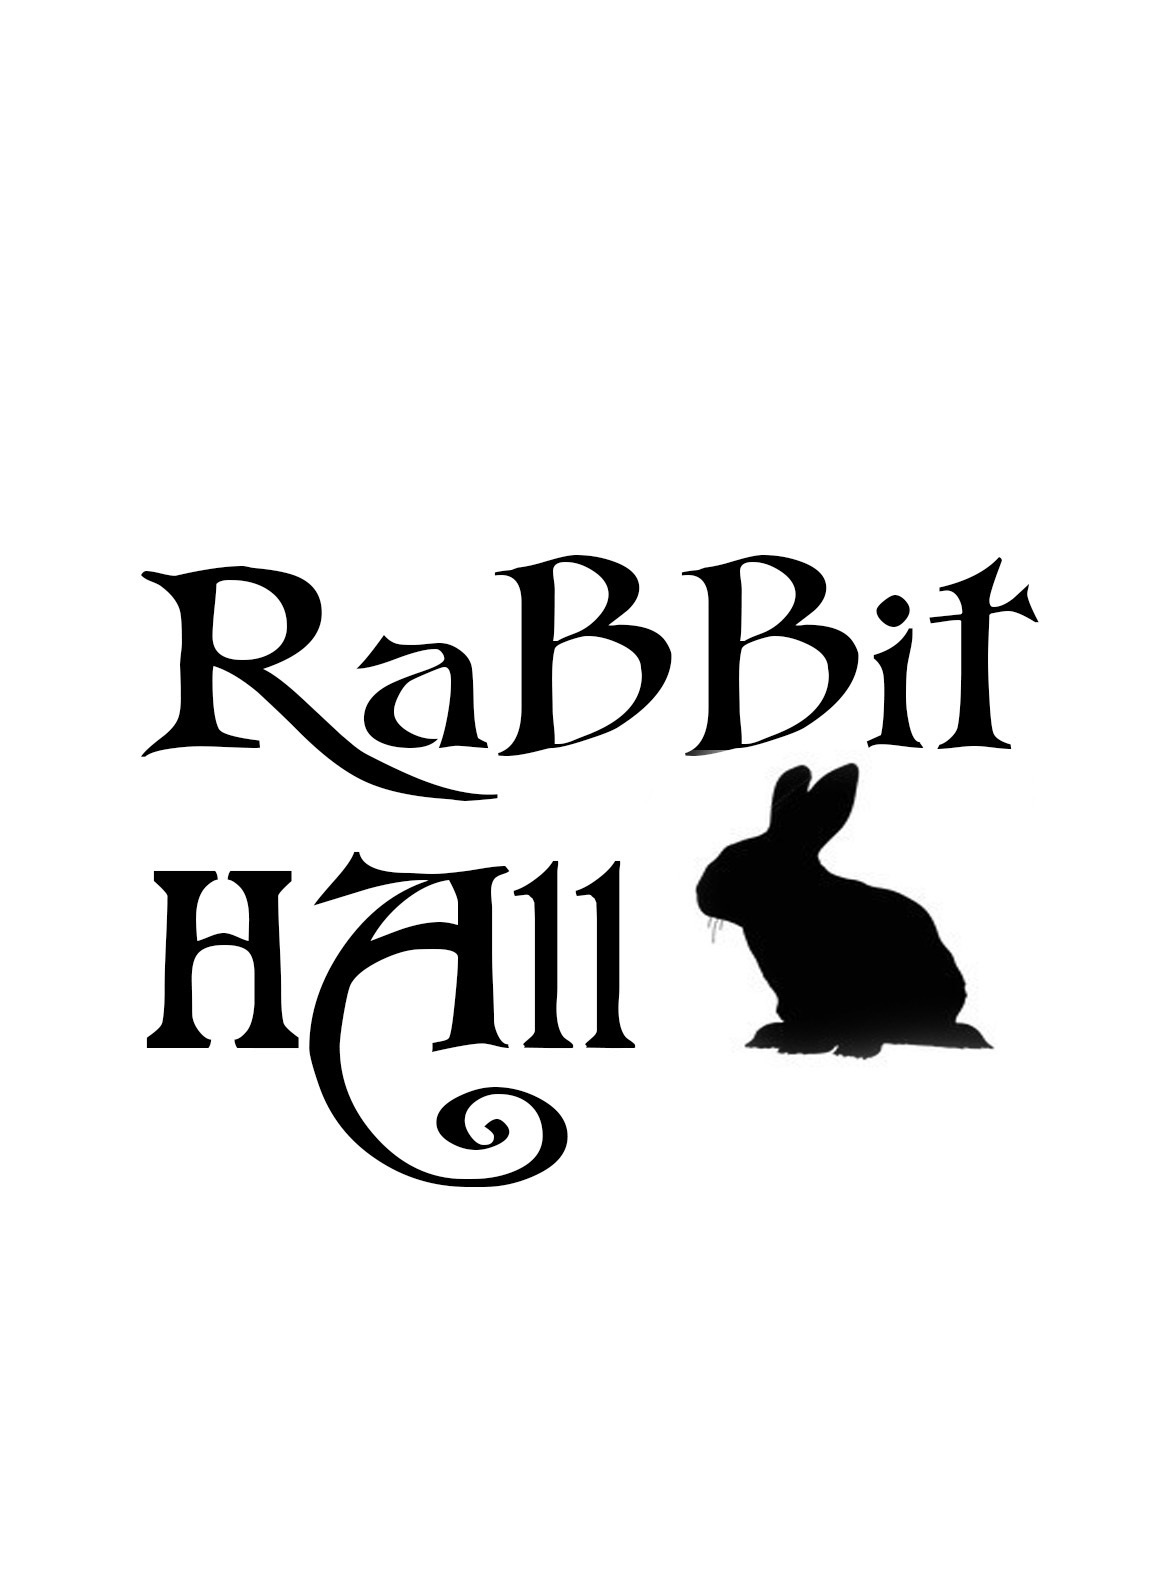 Кролик Hall. White Rabbit Family логотип. Настя кролик. Рэббит Холл виски.